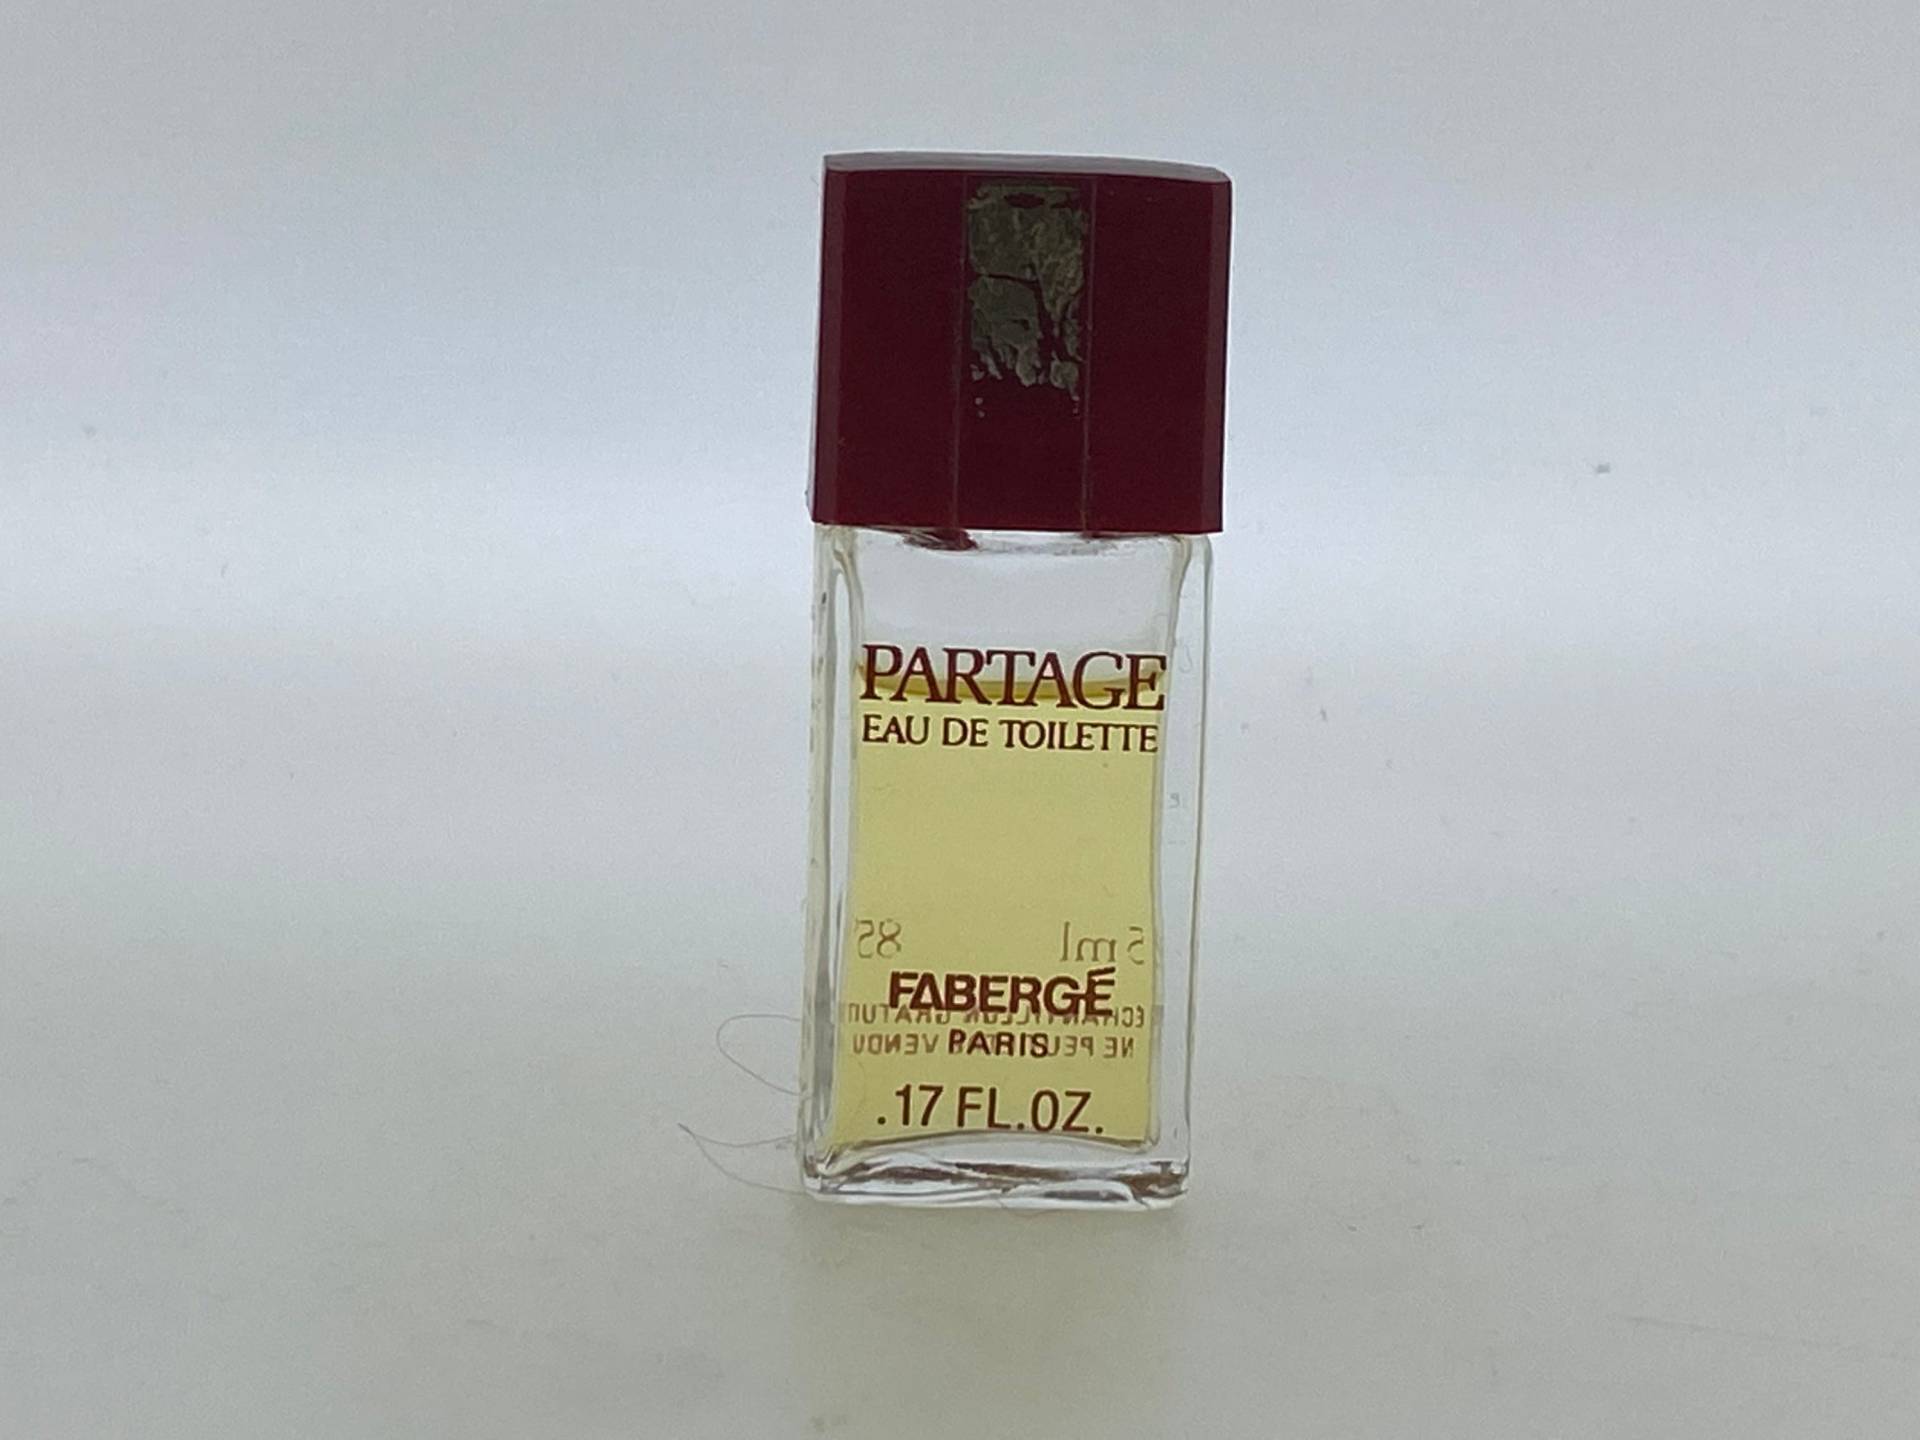 Partage Fabergé 1979 Eau De Toilette Miniatur 5 Ml Full 85-90 % von VintagePerfumeShop